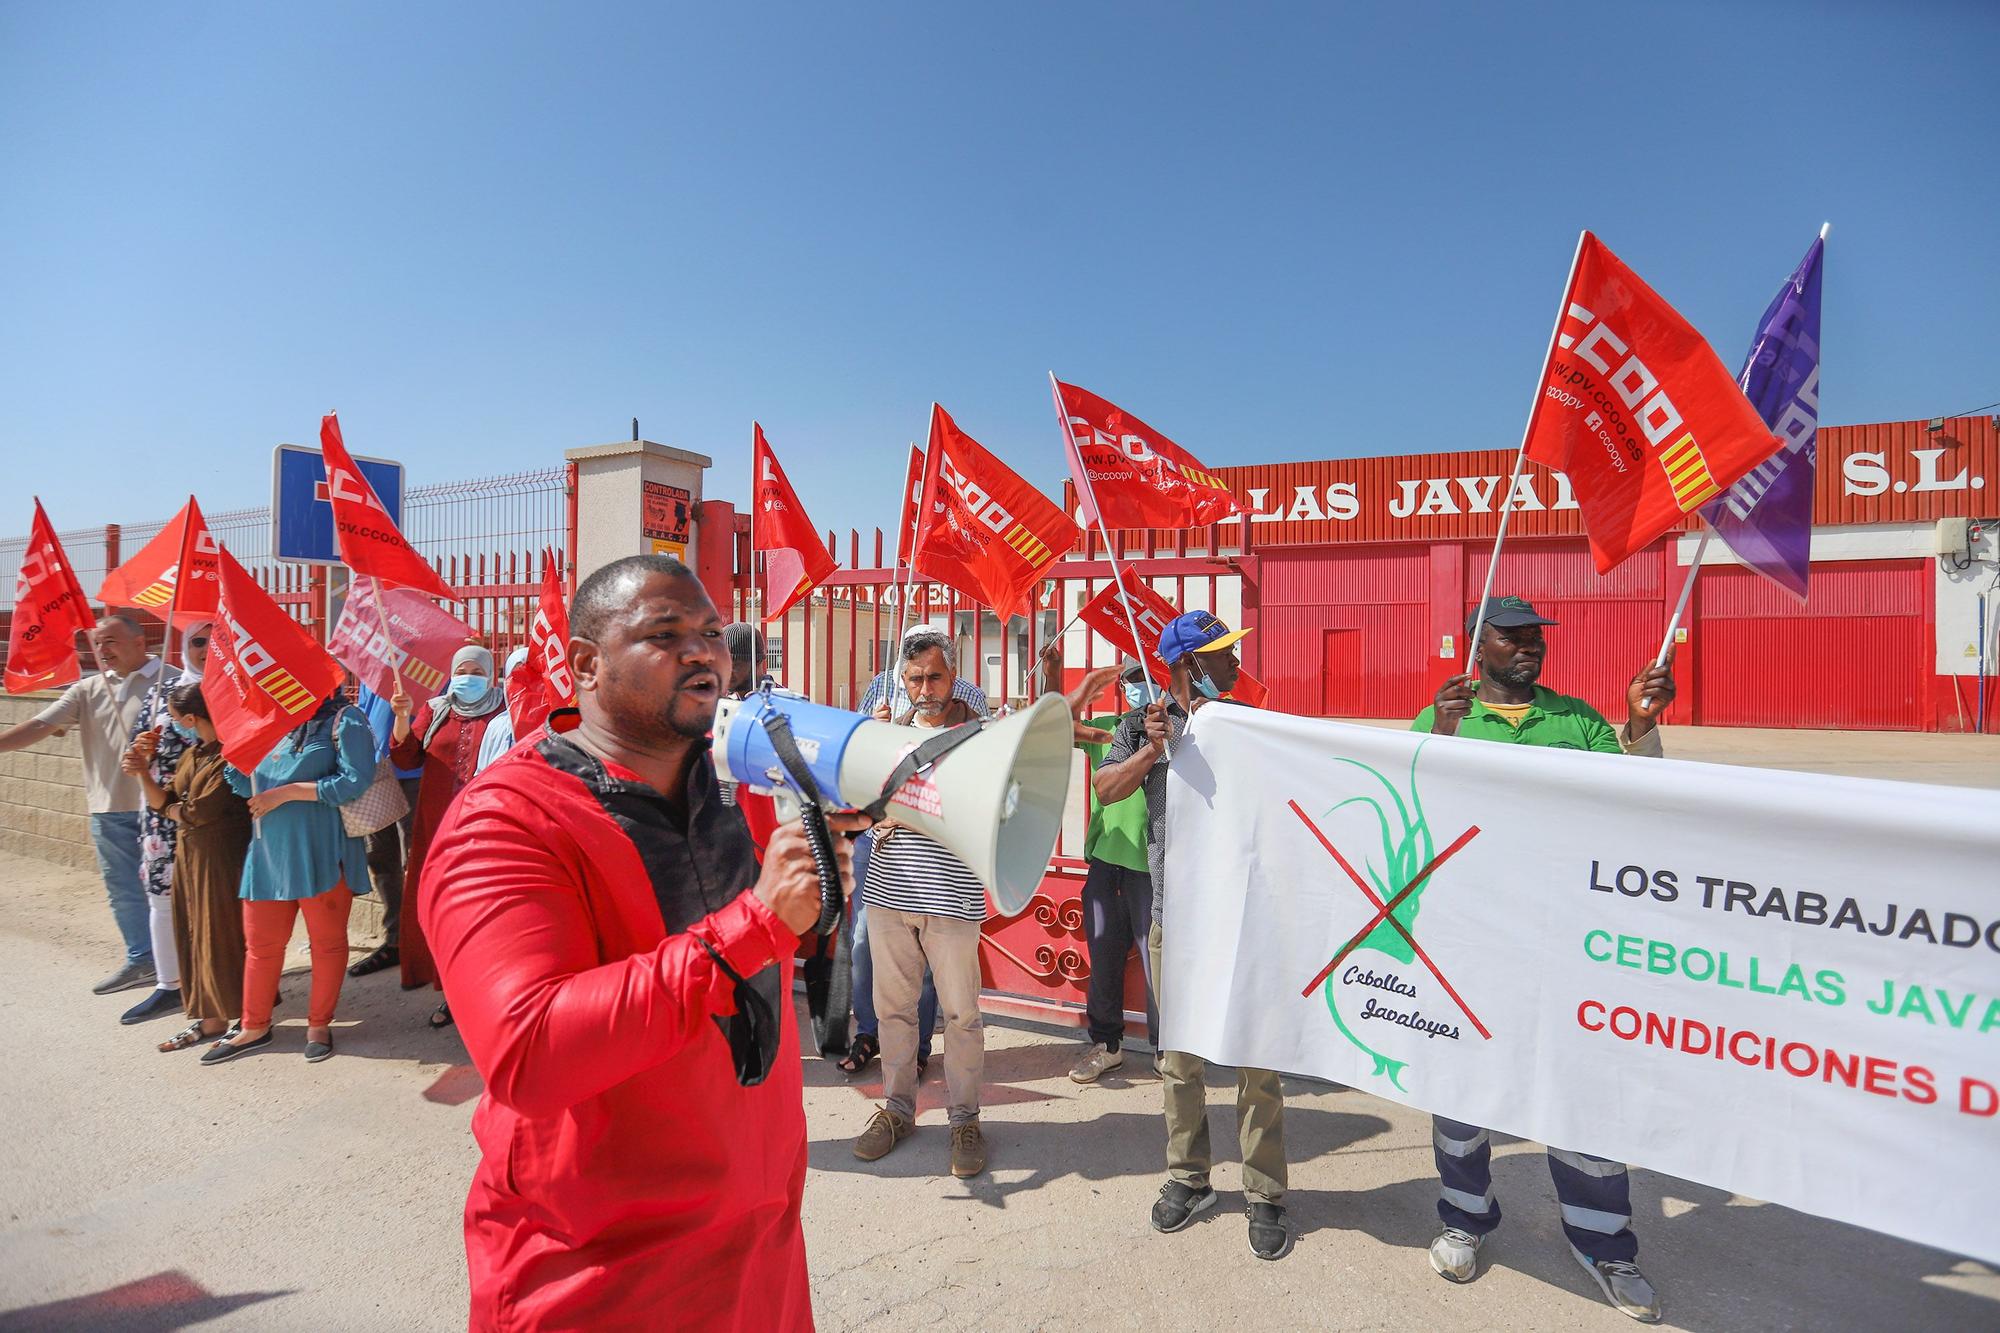 Trabajadores de Cebollas Javaloyes en Cox se concentran por "trato discriminatorio y represión sindical" en el día del Ramadán